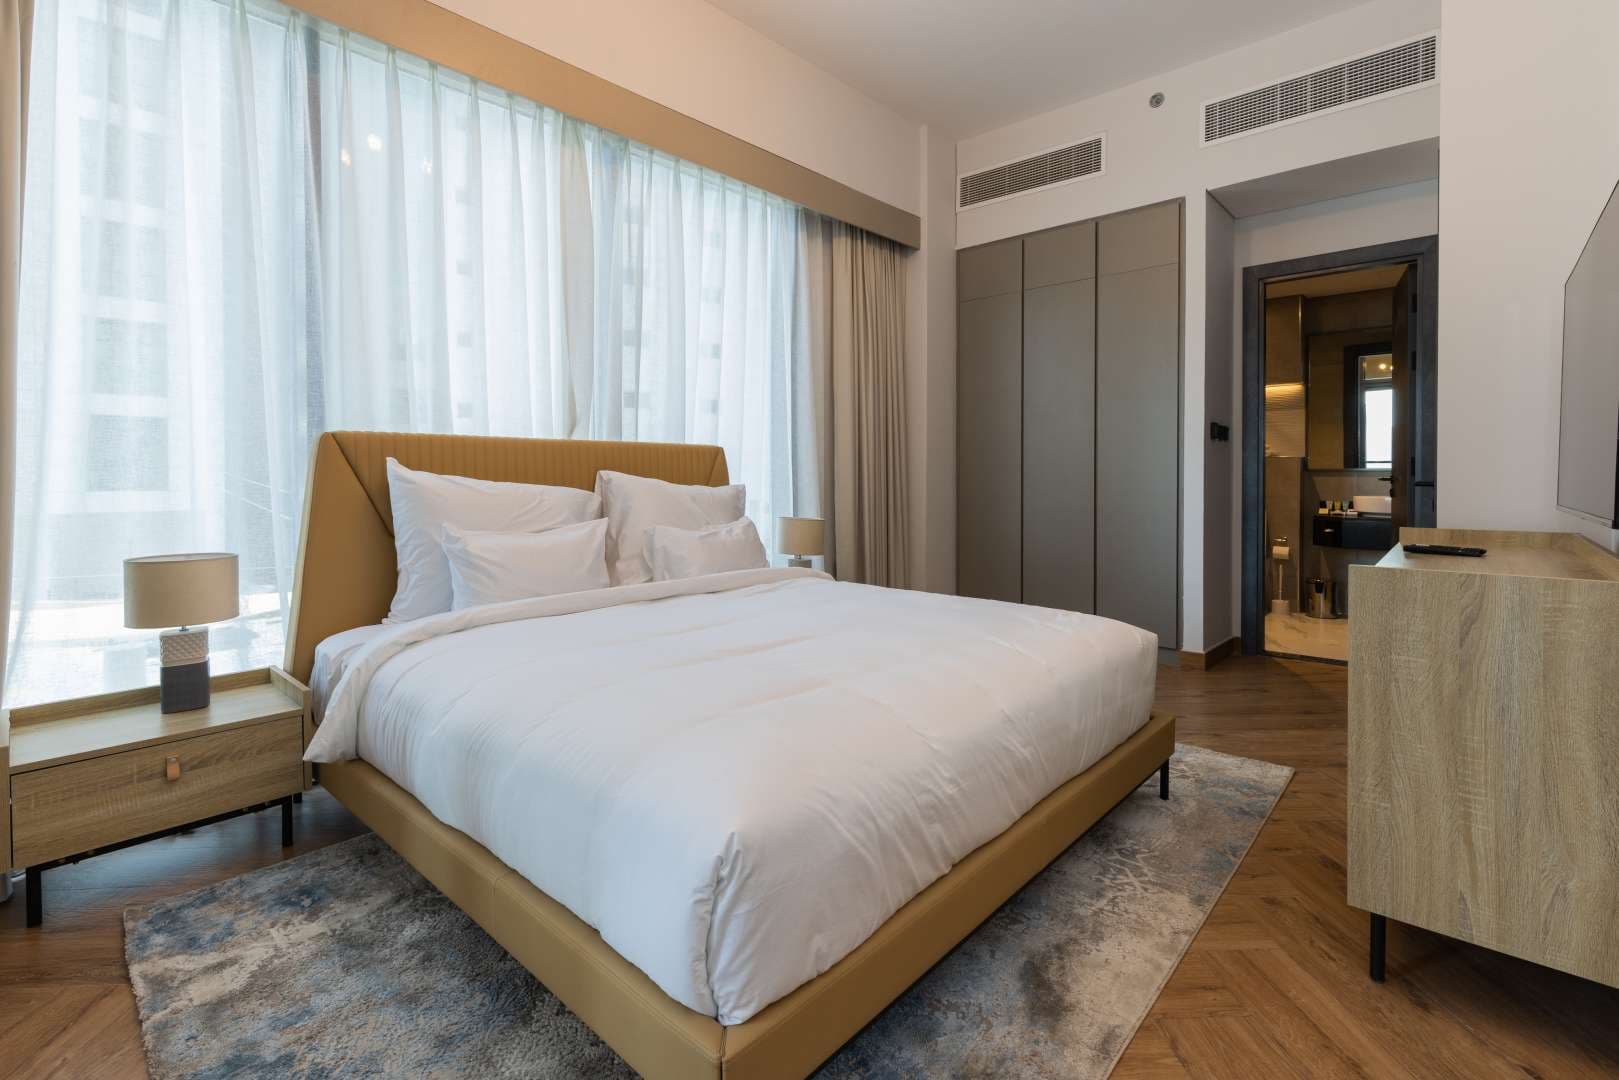 2 Bedroom Villa For Rent Dubai Marina Moon Lp11825 21ce50f4a7c57c00.jpg